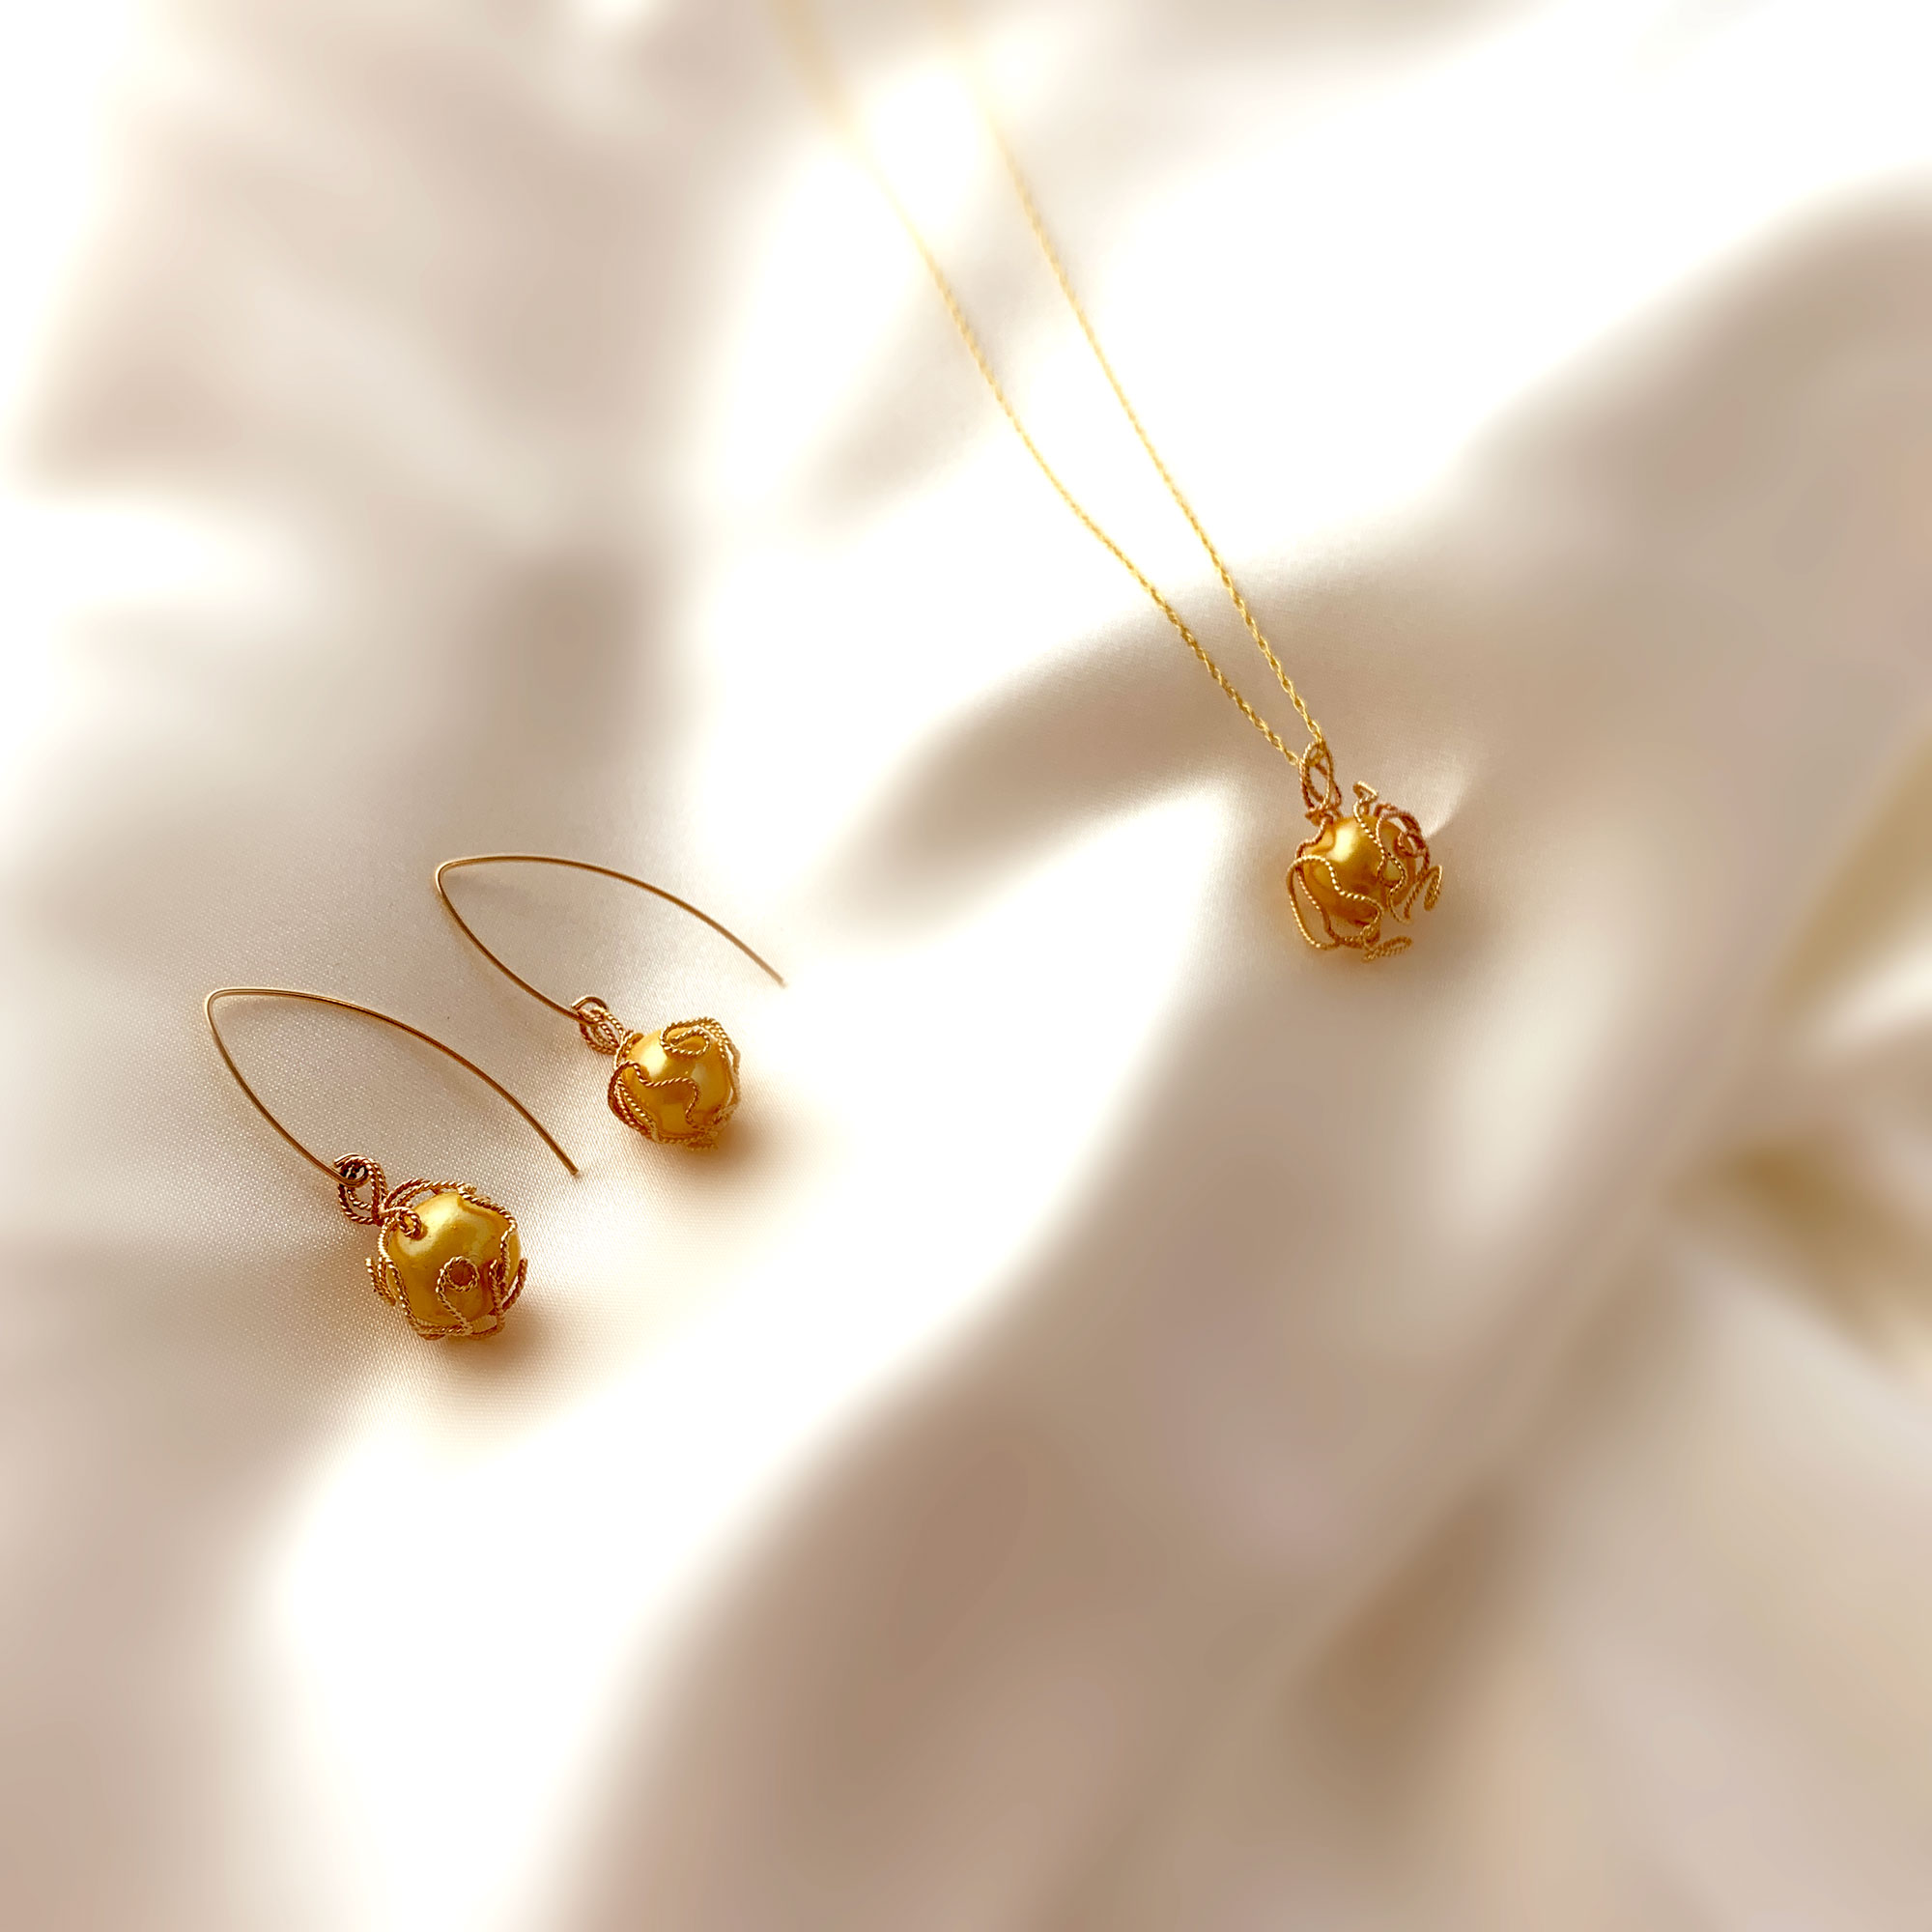 gold hoop earrings designs daily wear | Simple gold hoop earrings designs  with weight | Gold Bali - YouTube